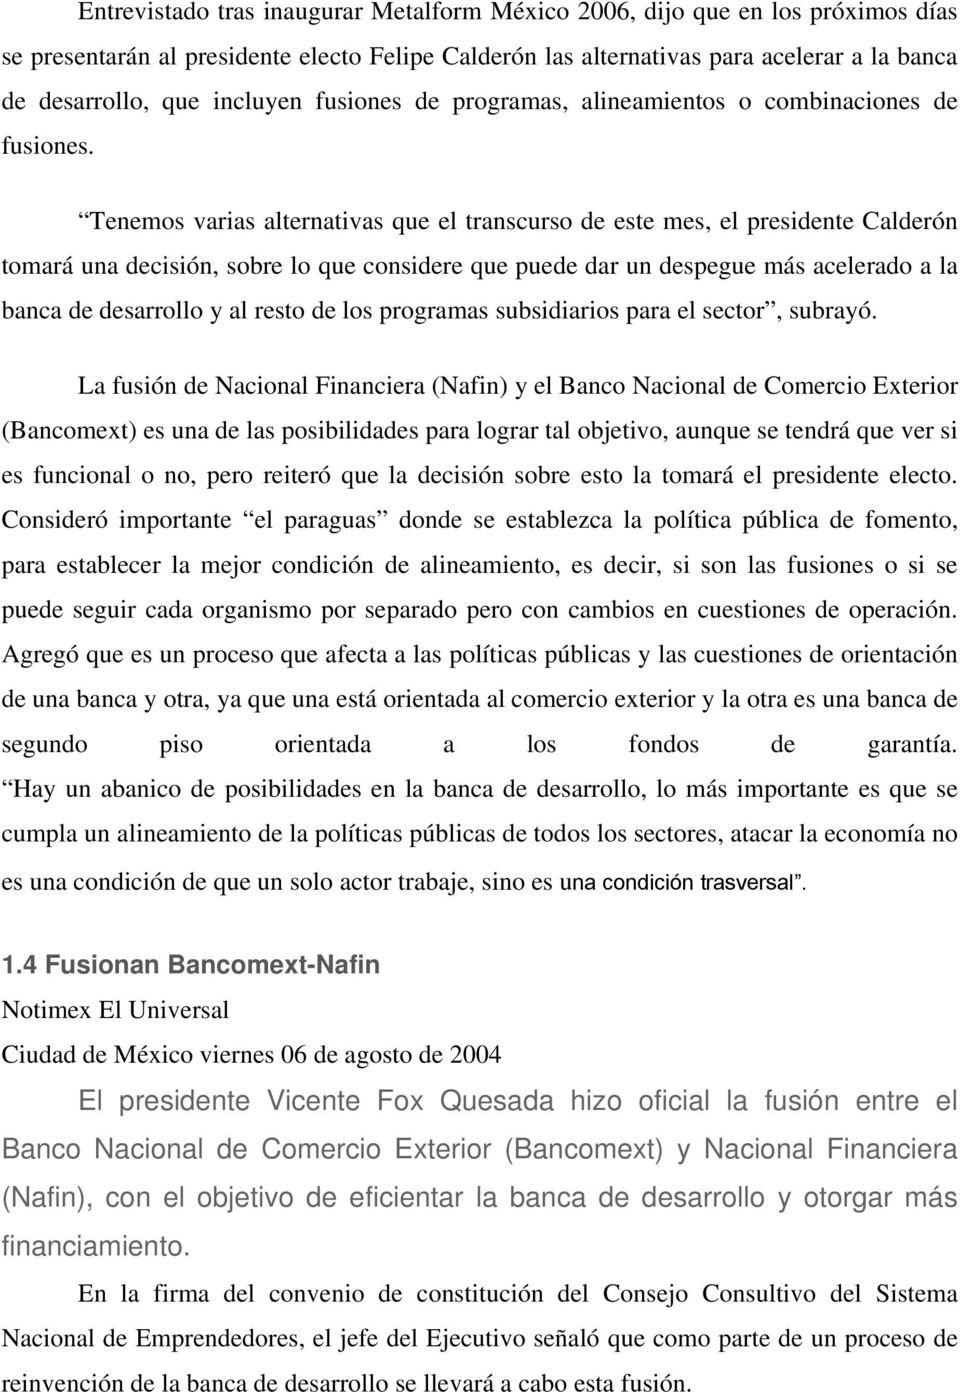 Tenemos varias alternativas que el transcurso de este mes, el presidente Calderón tomará una decisión, sobre lo que considere que puede dar un despegue más acelerado a la banca de desarrollo y al